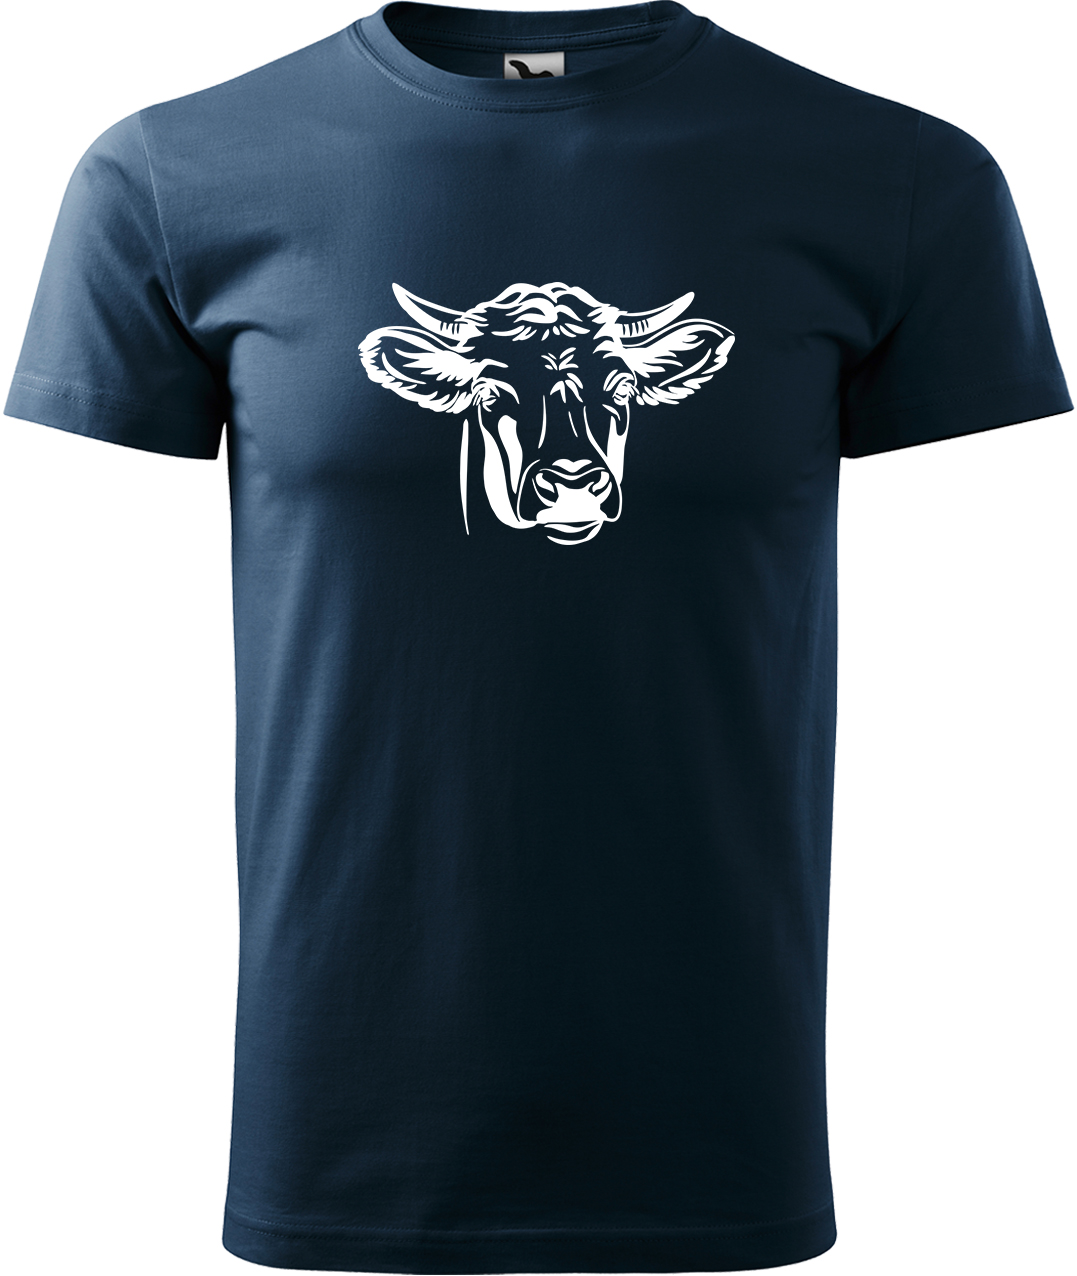 Pánské tričko s krávou - Hlava krávy Velikost: 3XL, Barva: Námořní modrá (02), Střih: pánský